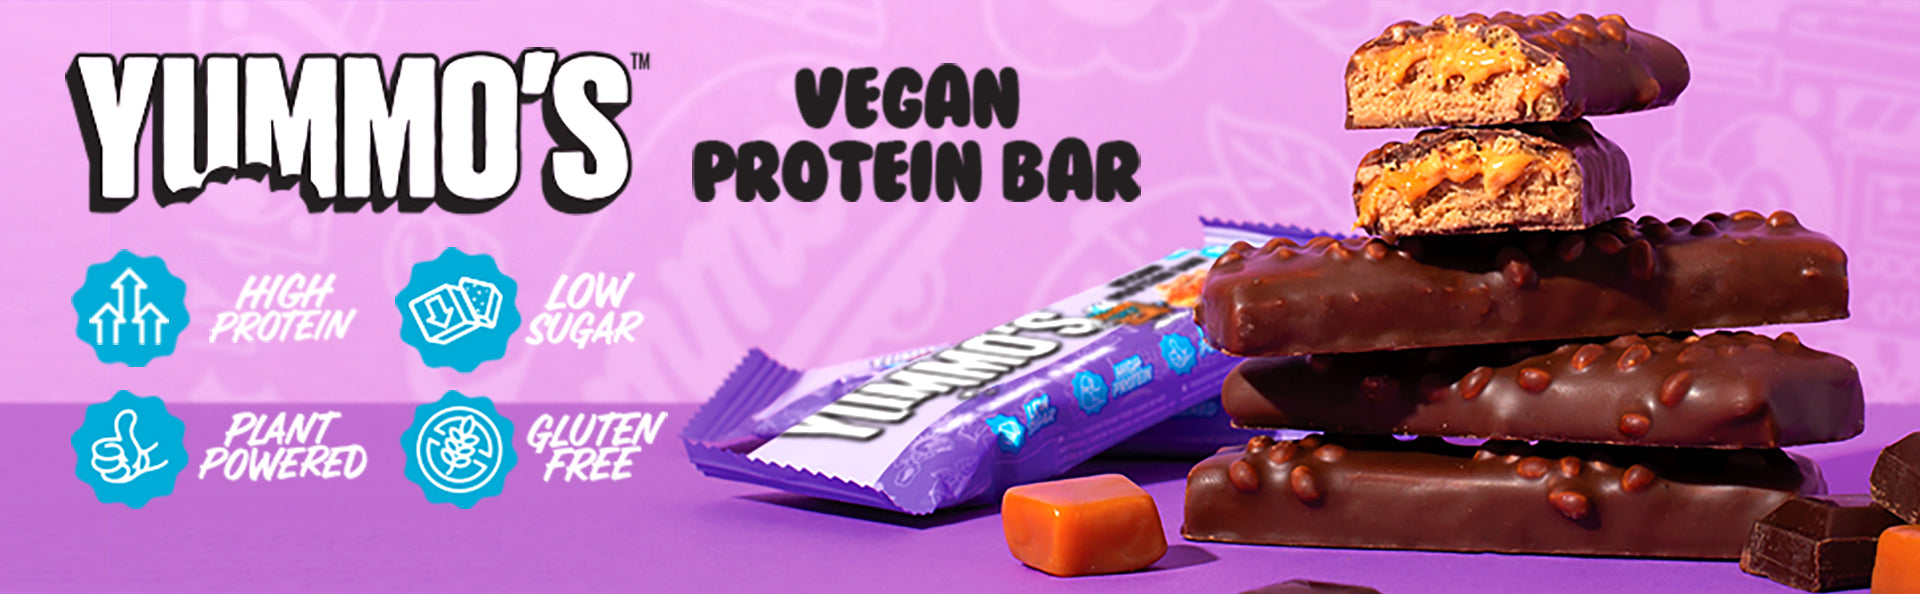 Yummo's Vegan Protein Bar